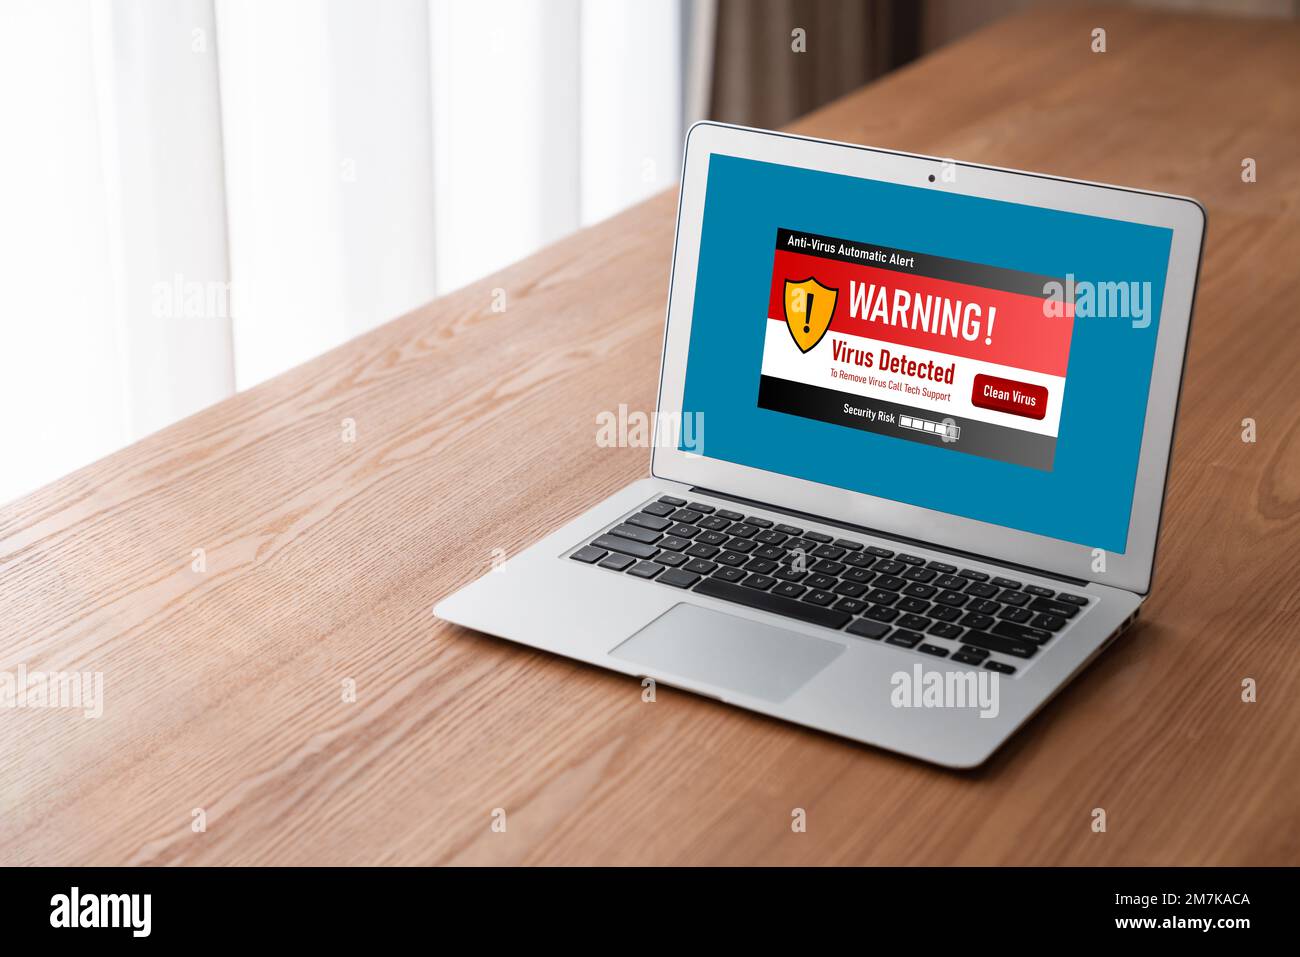 L'avviso di avviso di virus sullo schermo del computer ha rilevato una minaccia cibernetica, un hacker, un virus informatico e un malware Foto Stock